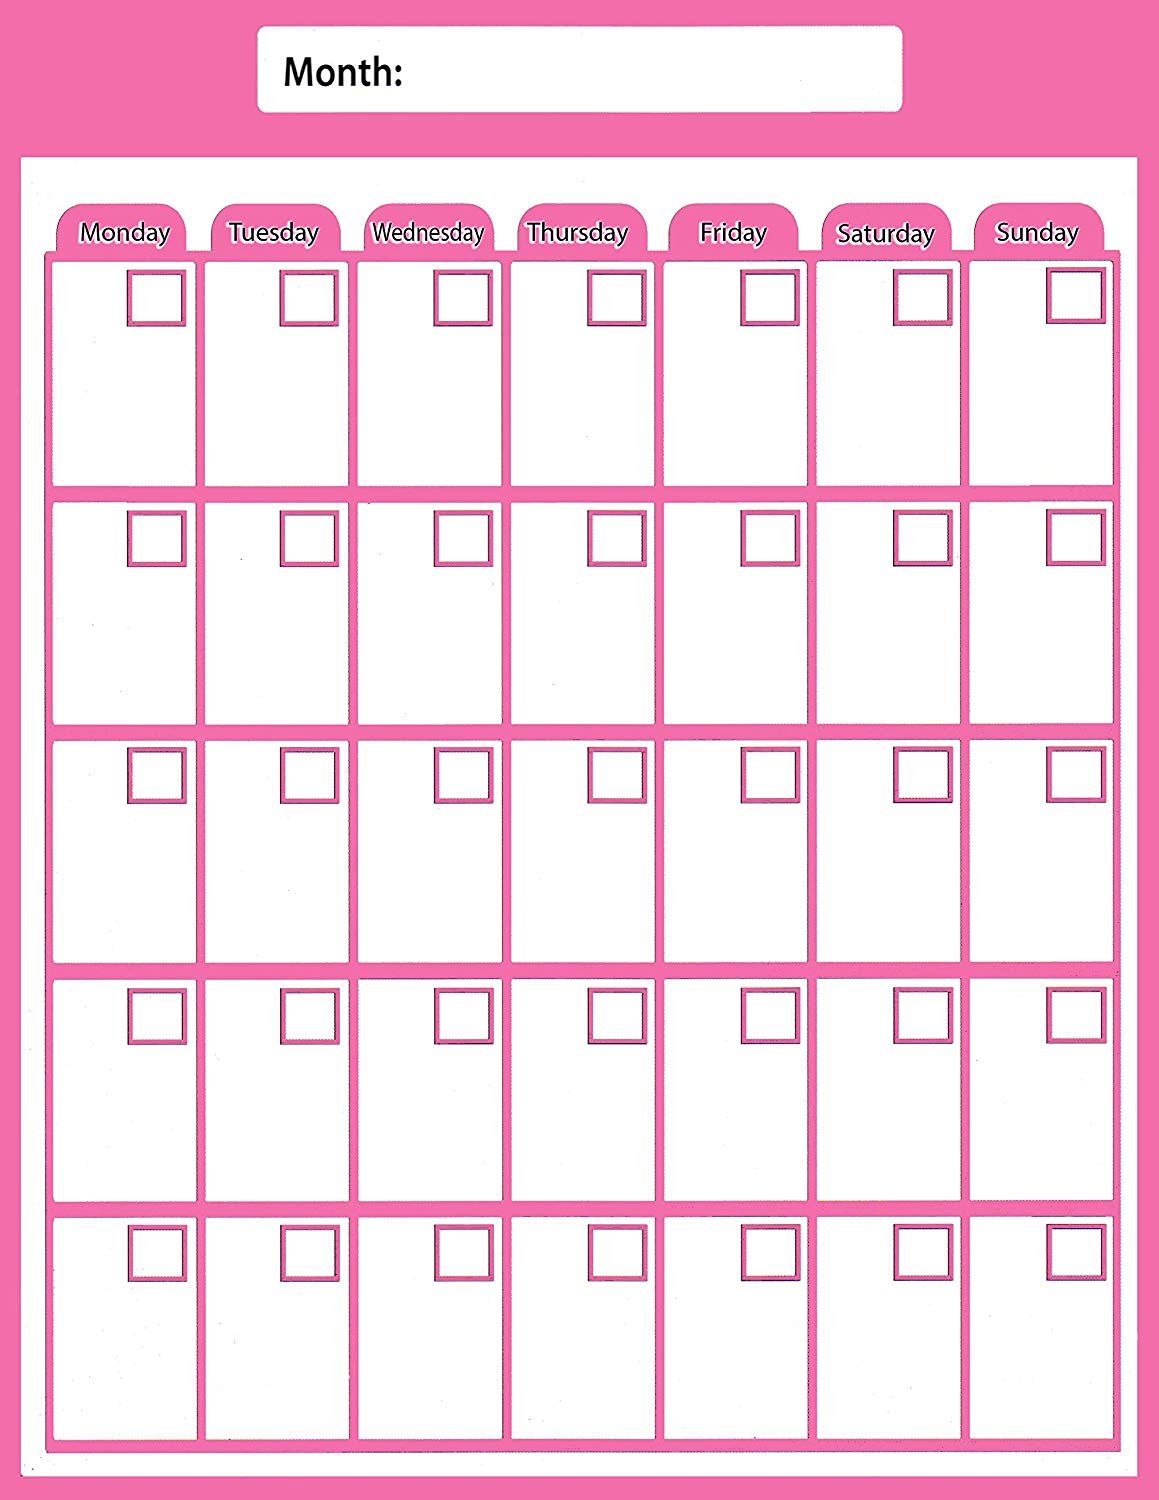 Magnetic Dry Erase Calendar - Monthly Planner/Locker Wallpaper - (Full Sheet Magnetic) (Pink)